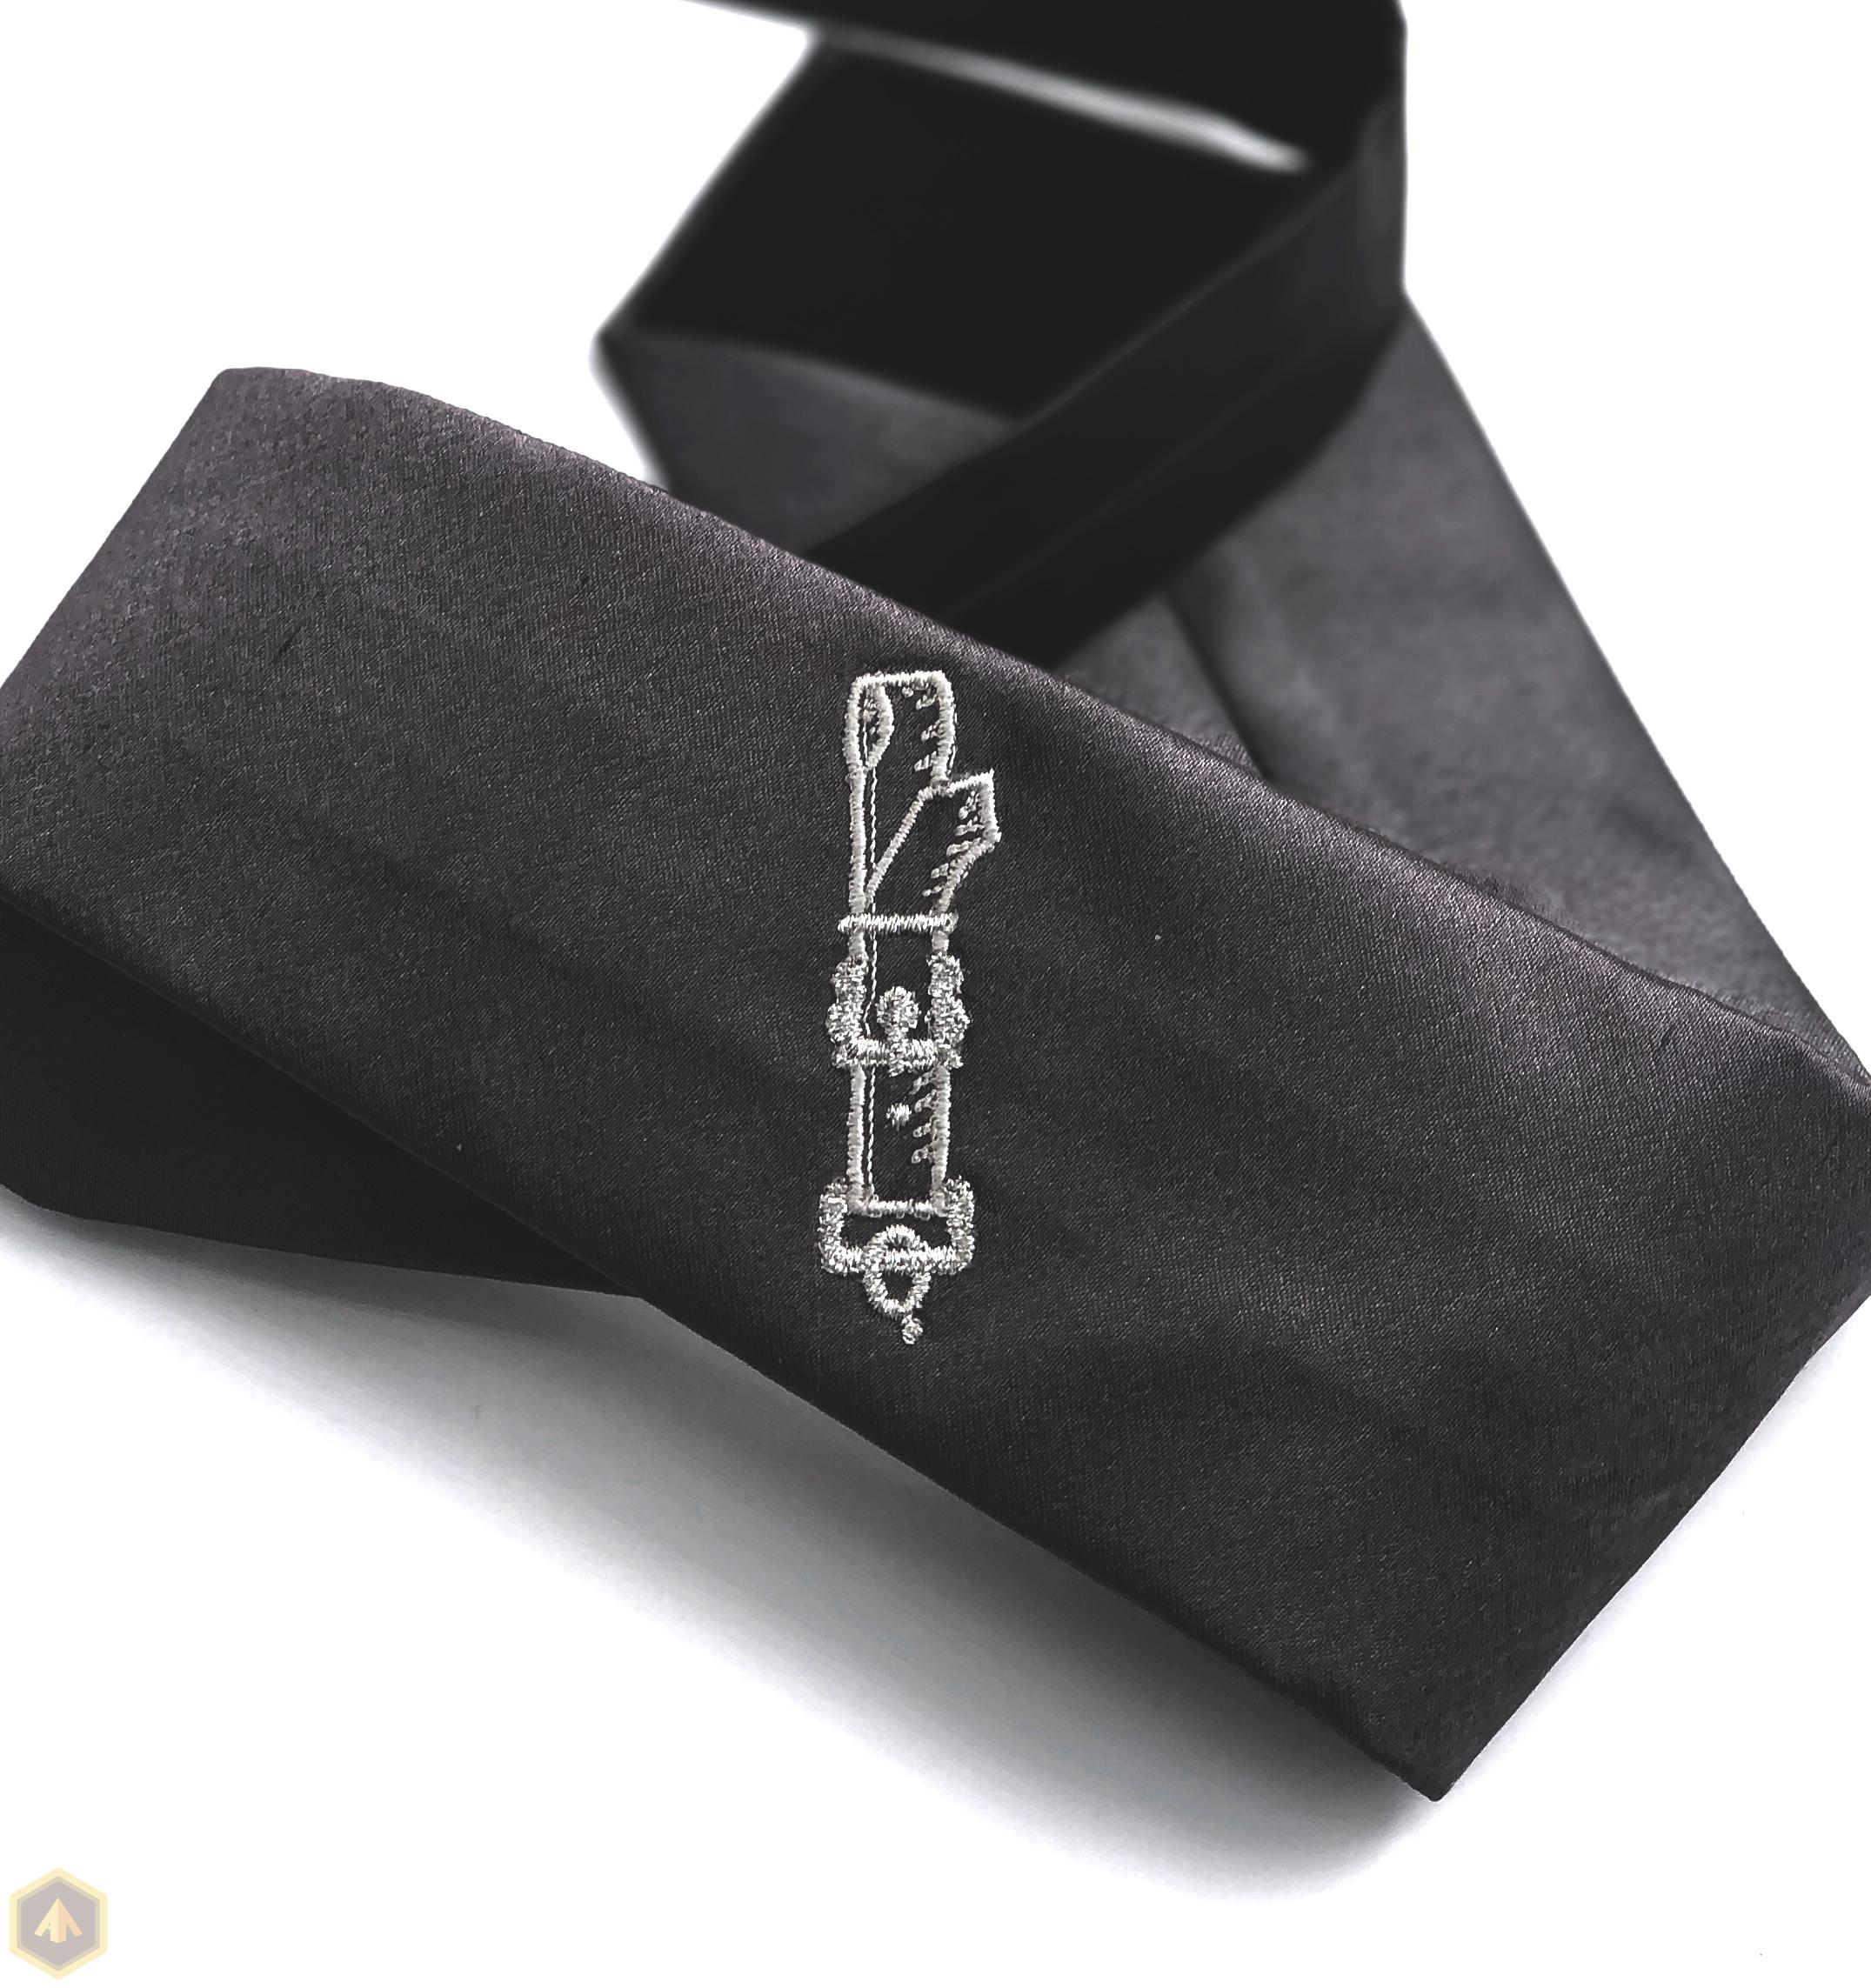 3.галстук